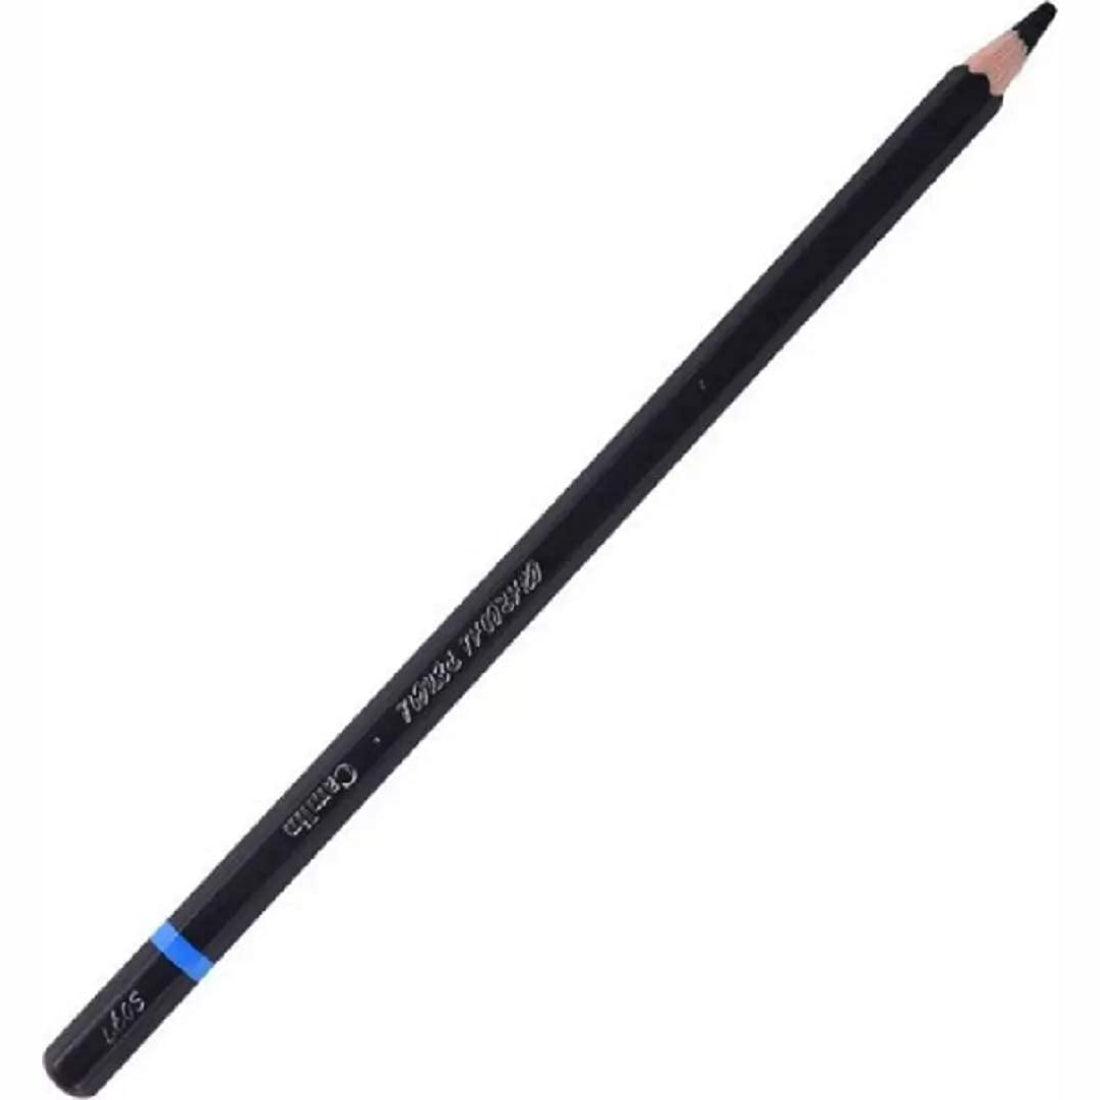 Camlin Charcoal Pencils